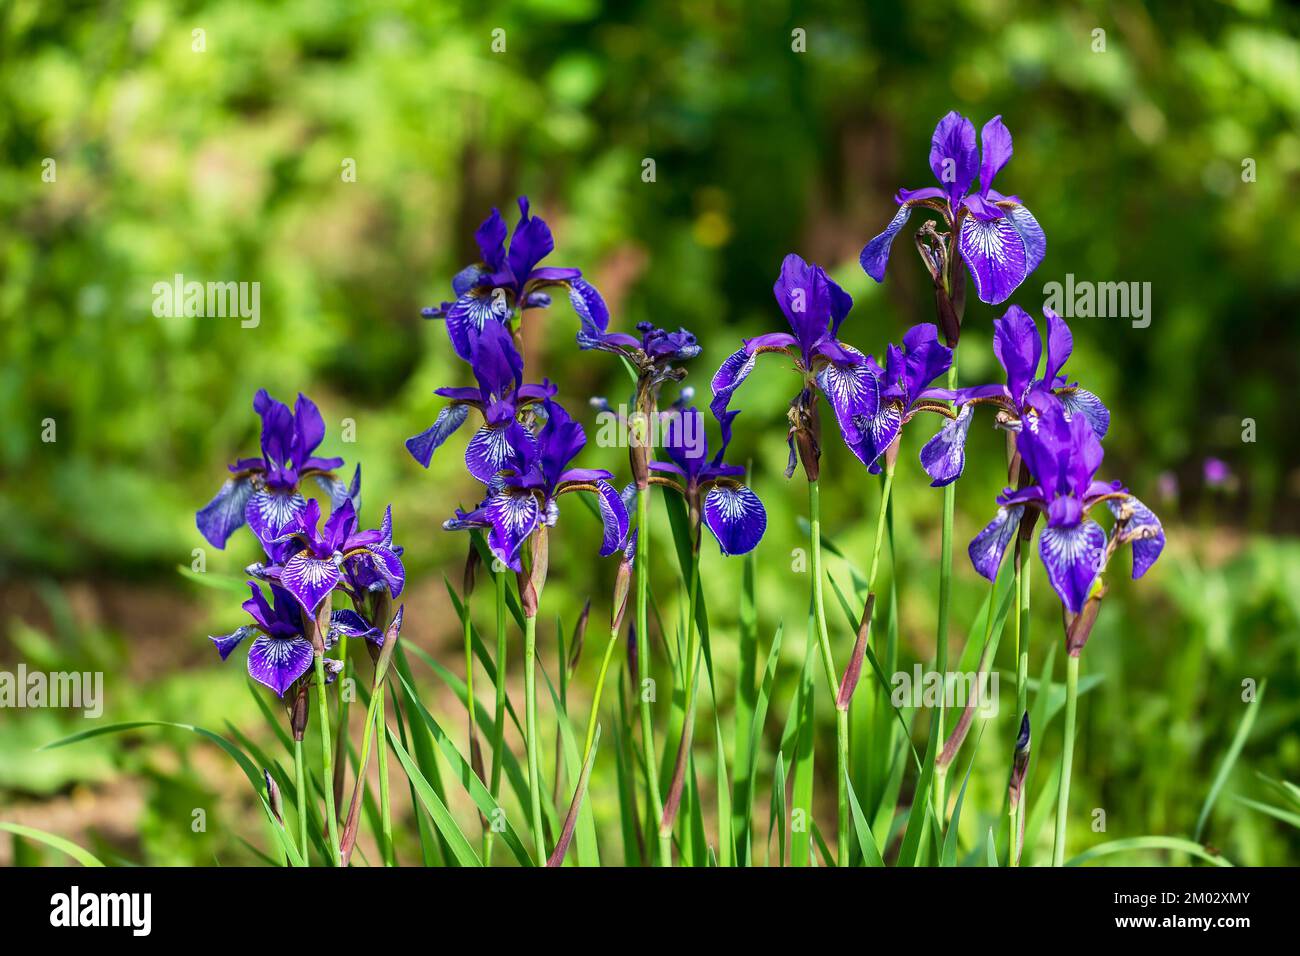 Flowers of Siberian iris, Iris sanguinea, wetted by rain Stock Photo